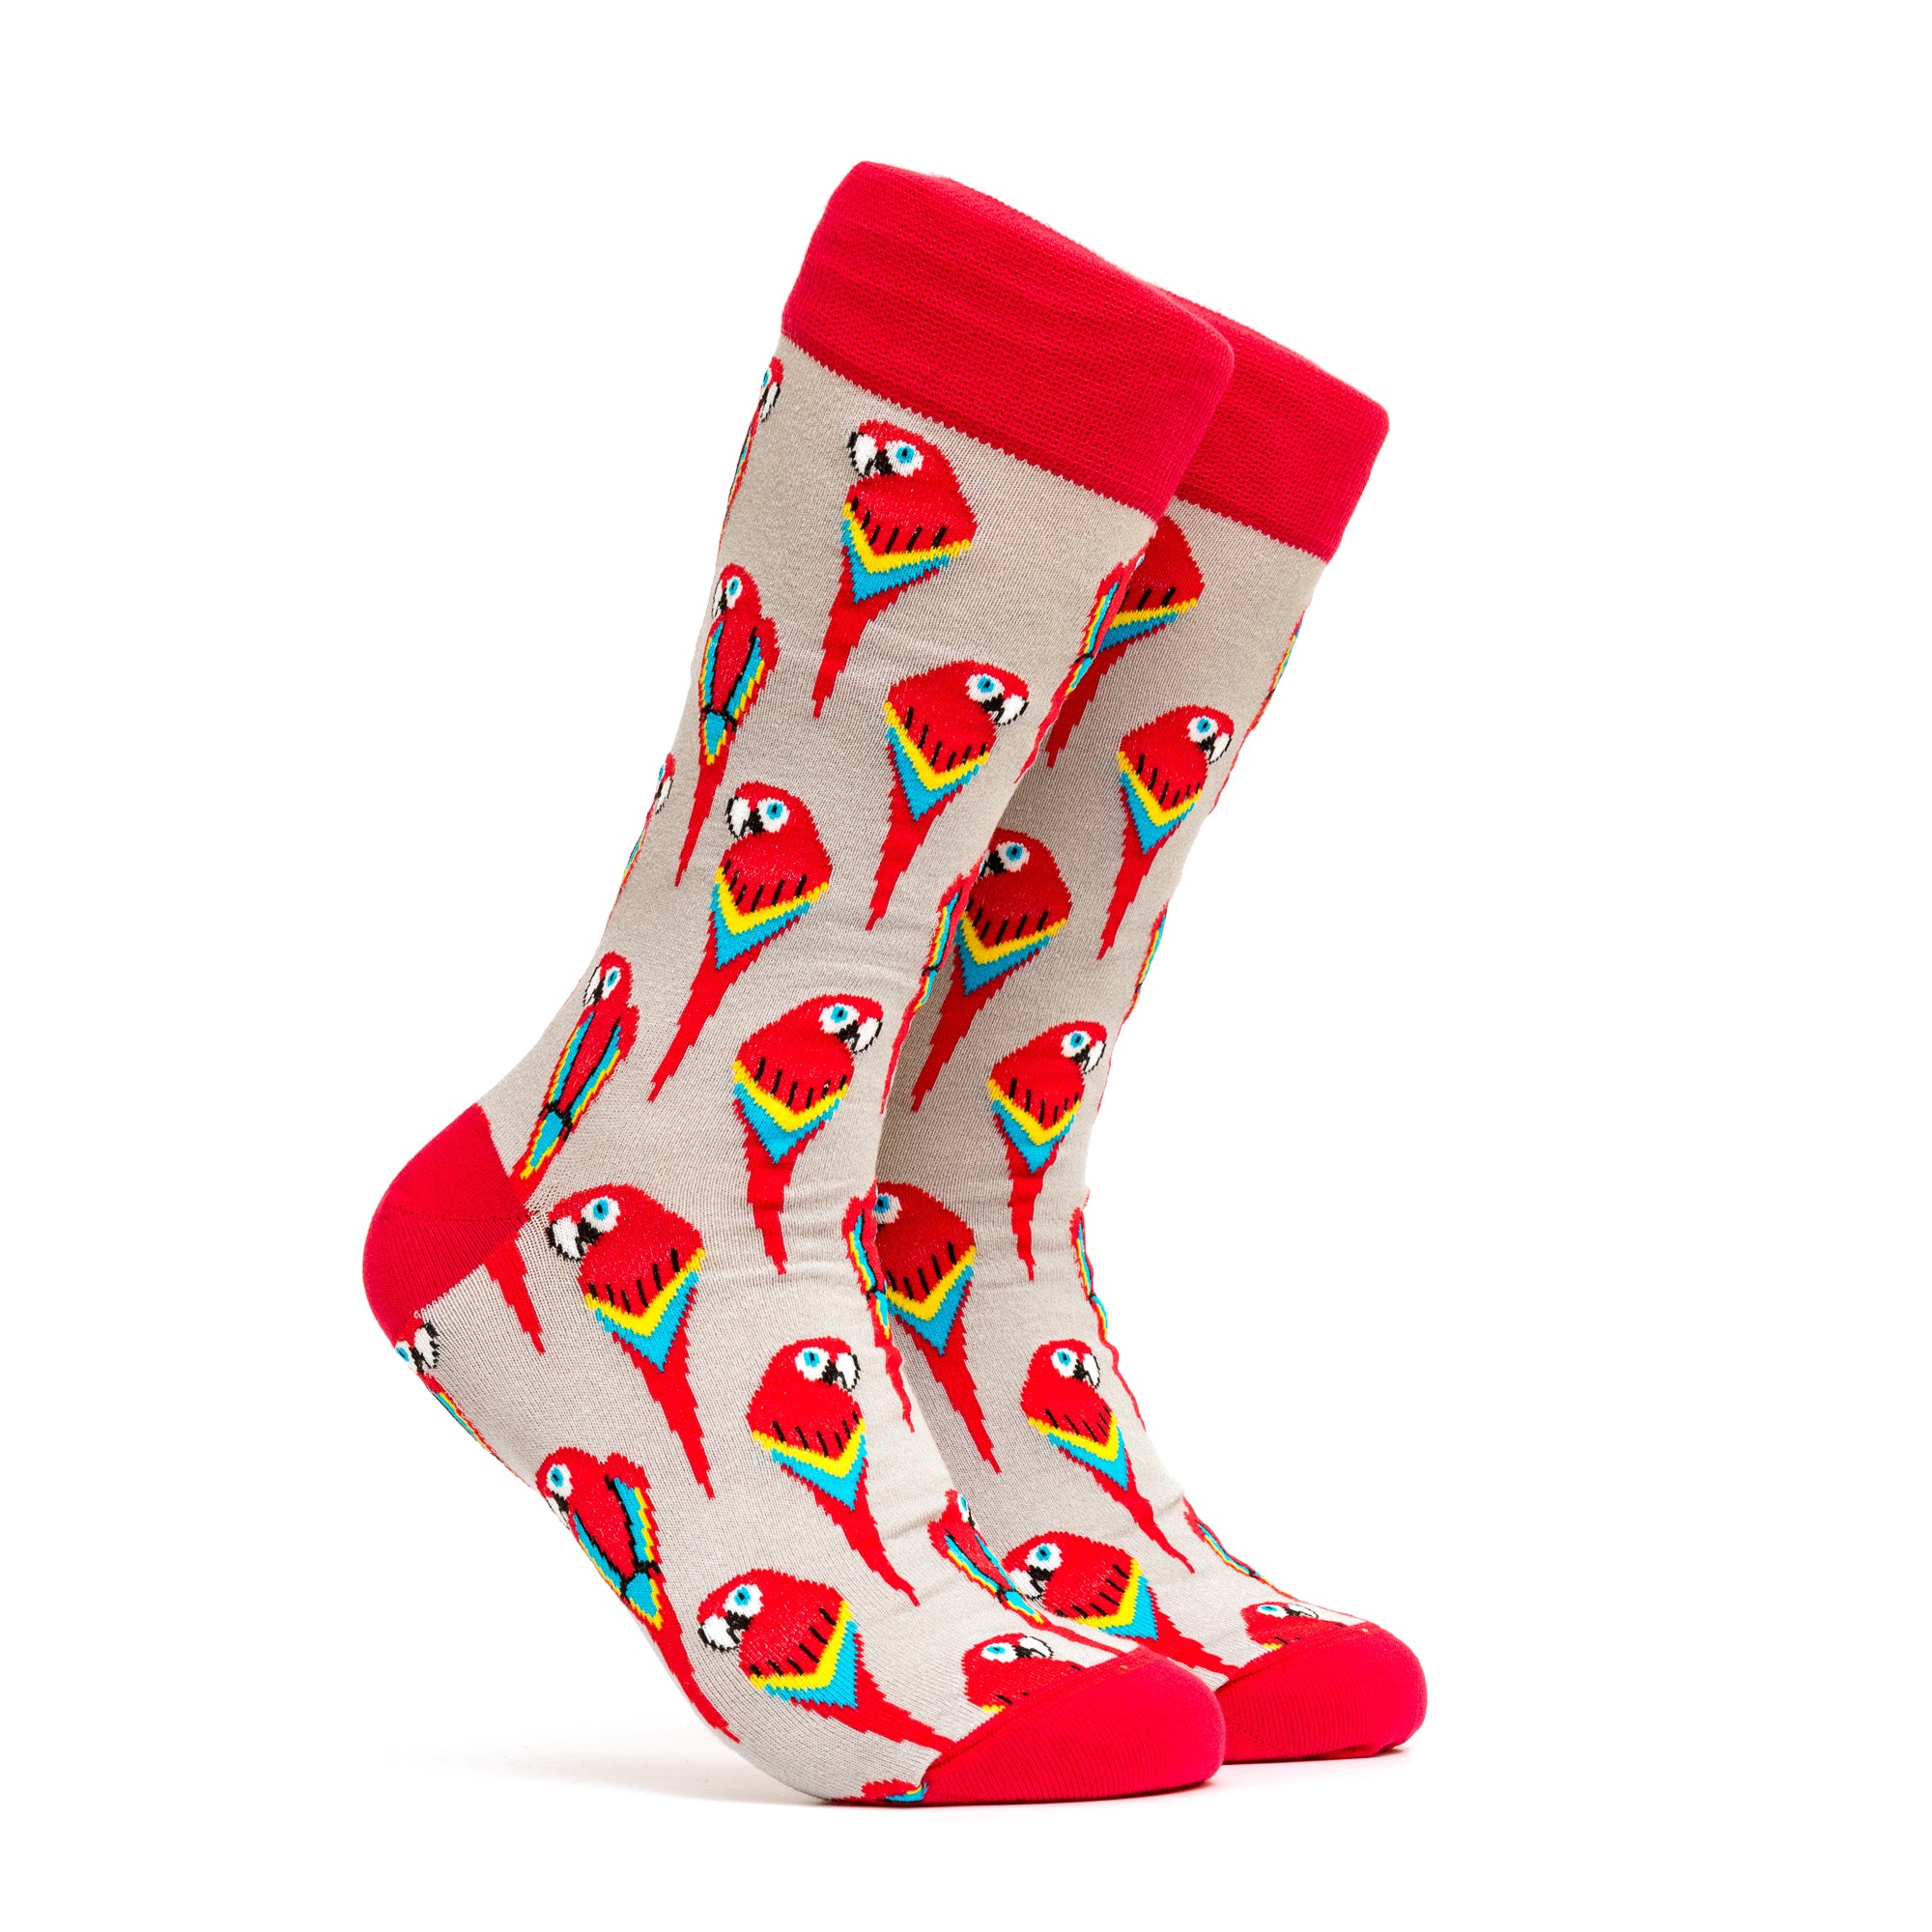 Talking Parrots Socks - Color Red